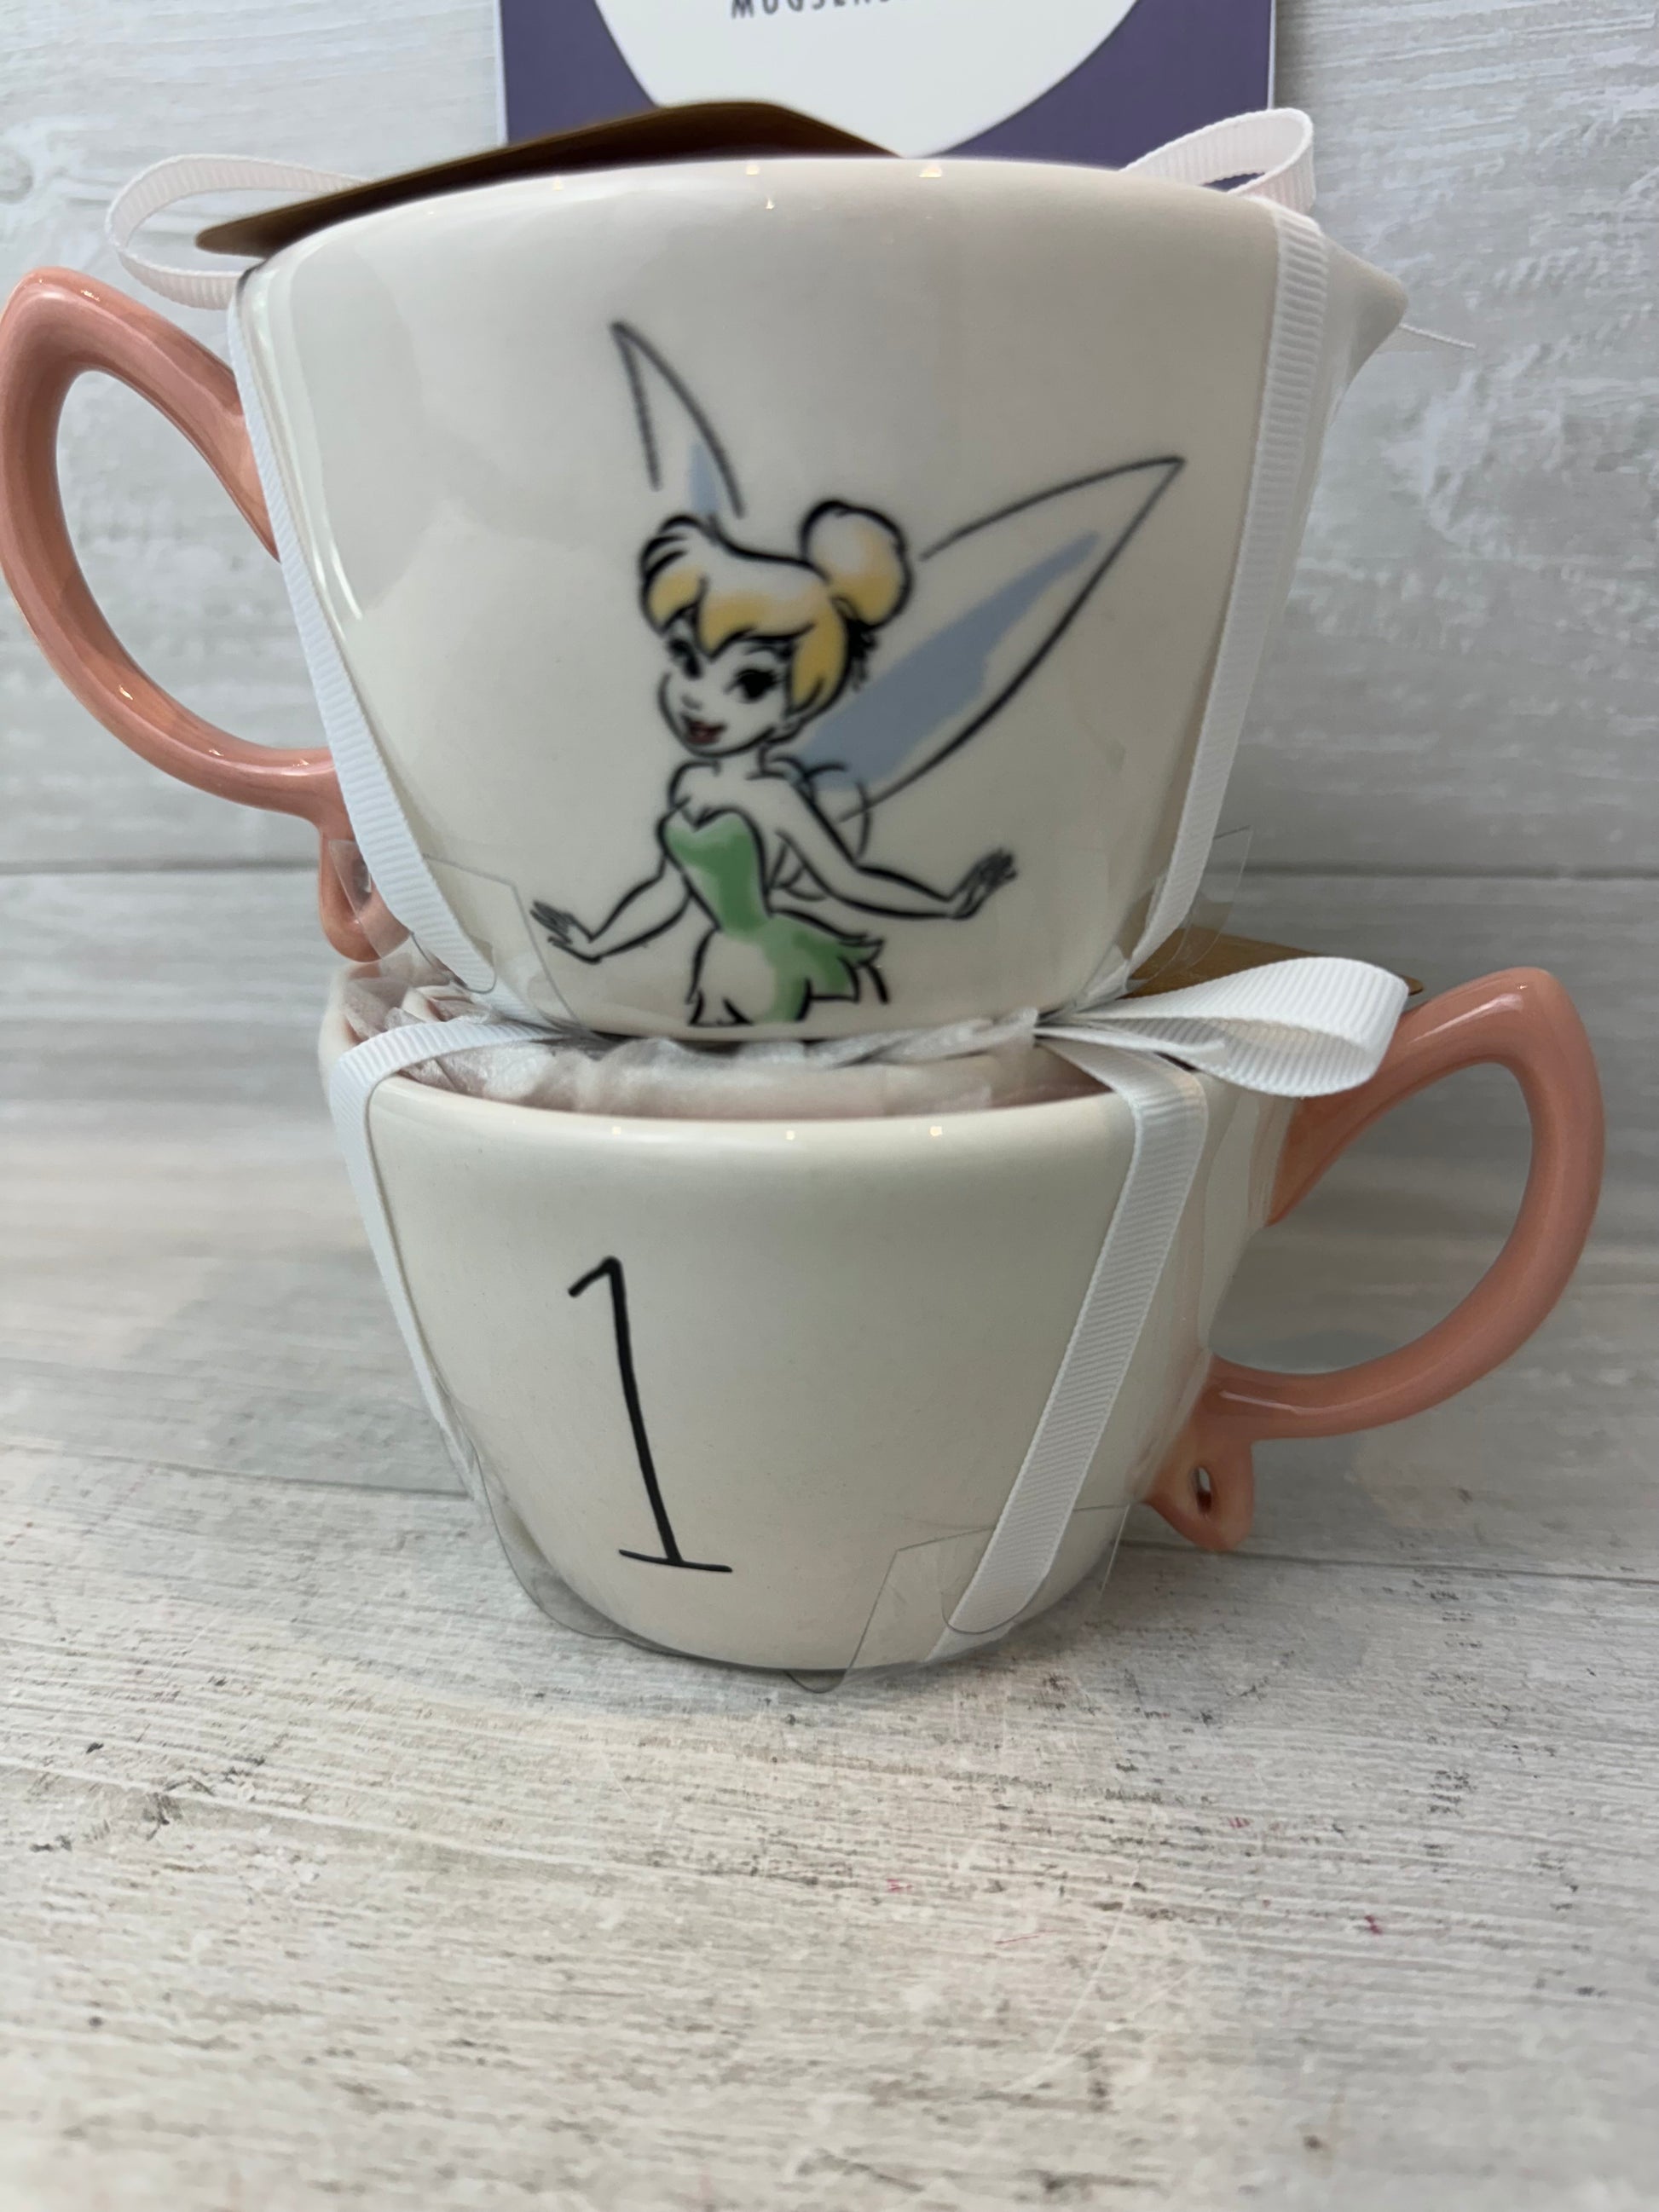 Rae Dunn Tinker Bell Measuring Cup Set (Pink) – Mug Sense